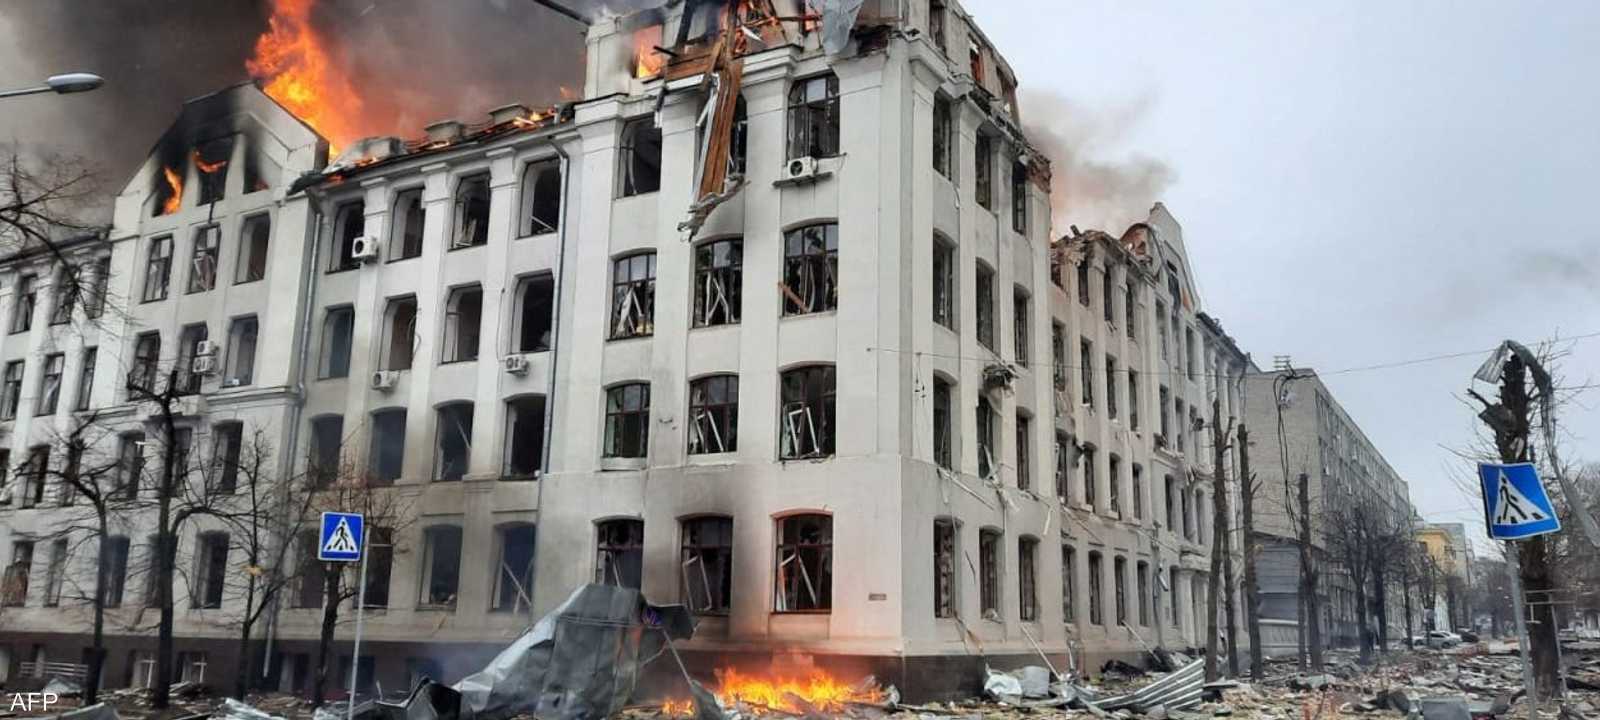 الحرب في أوكرانيا بدأت في 24 فبراير الماضي.